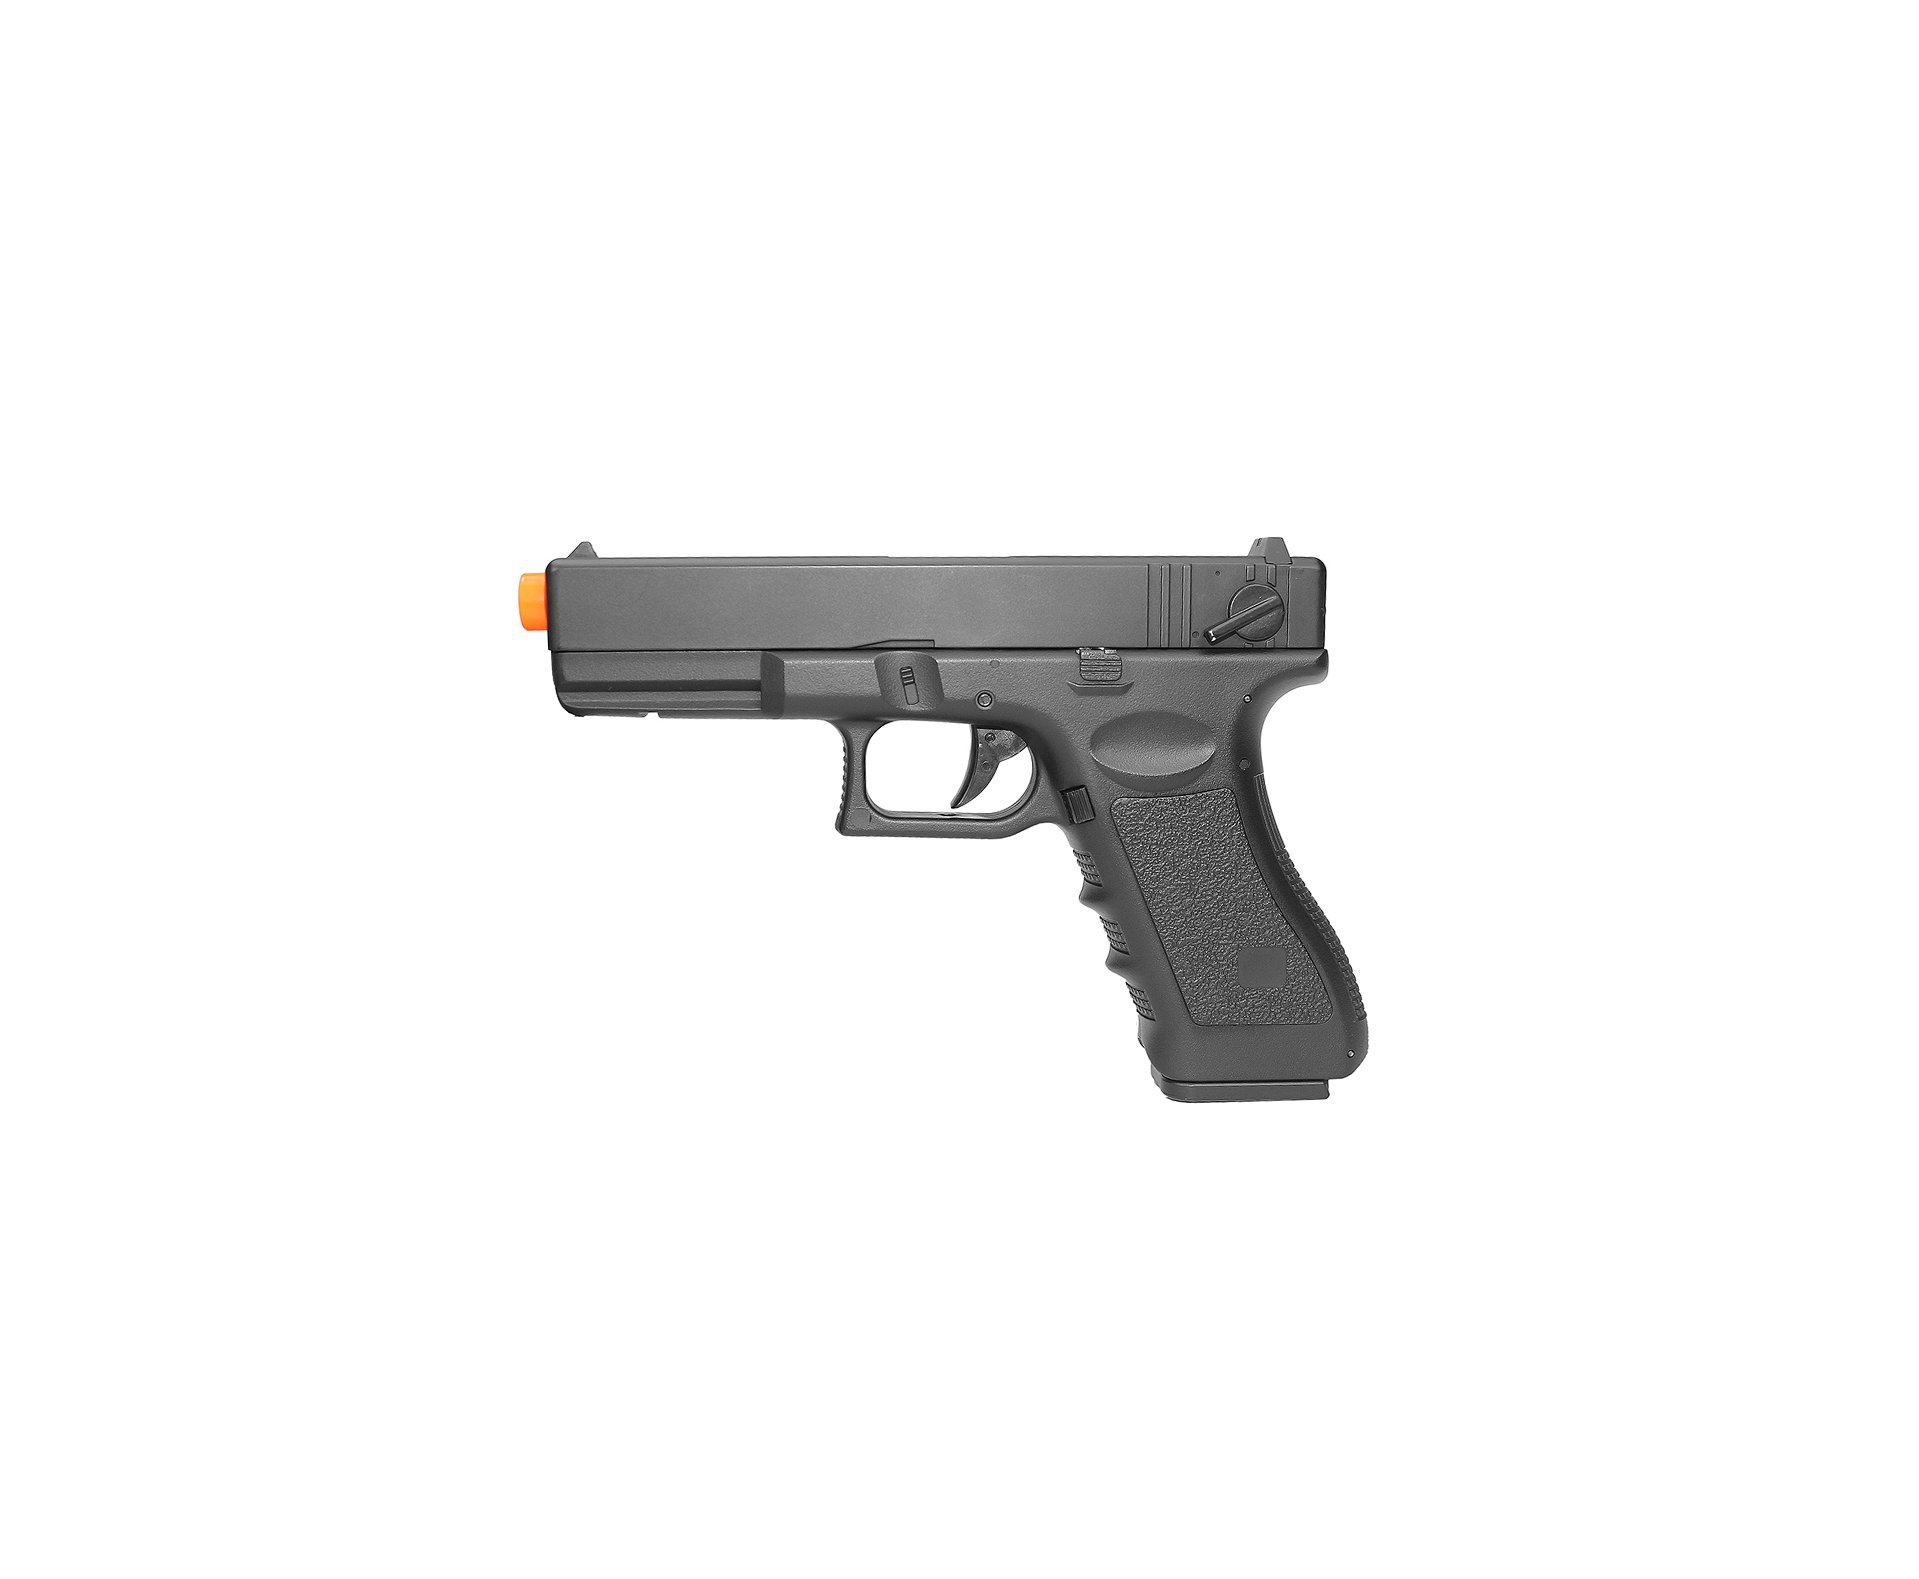 Pistola De Airsoft Glock G18c Bivolt + Esferas 0,20g + Capa Especial - Cyma